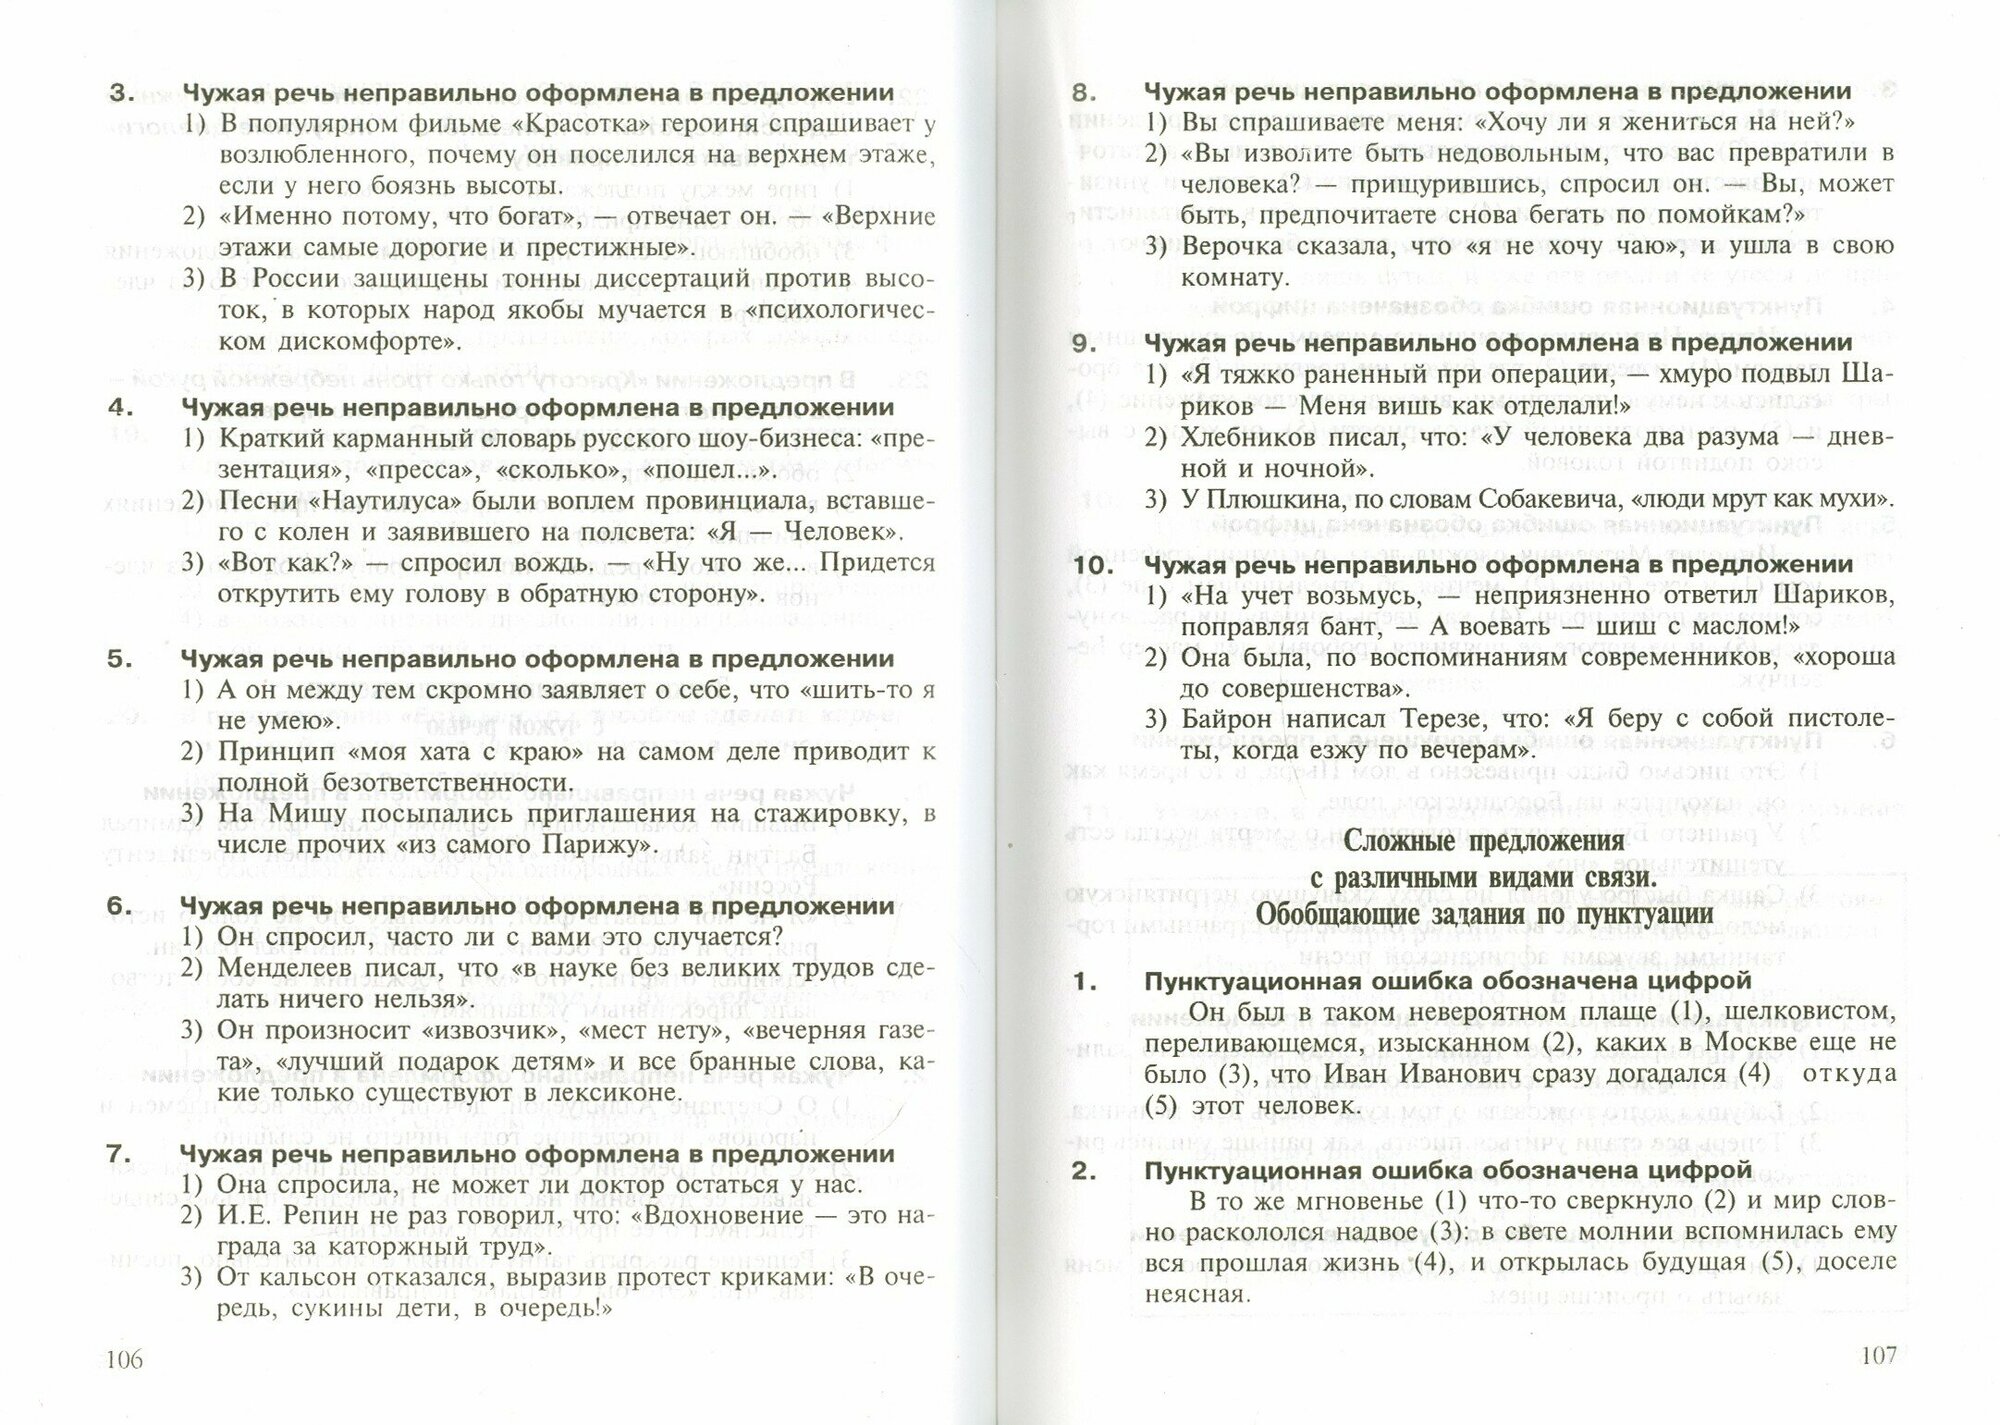 Интенсивный курс русского языка: 1000 тестов для подготовки к Всероссийскому тестированию и ЕГЭ - фото №3